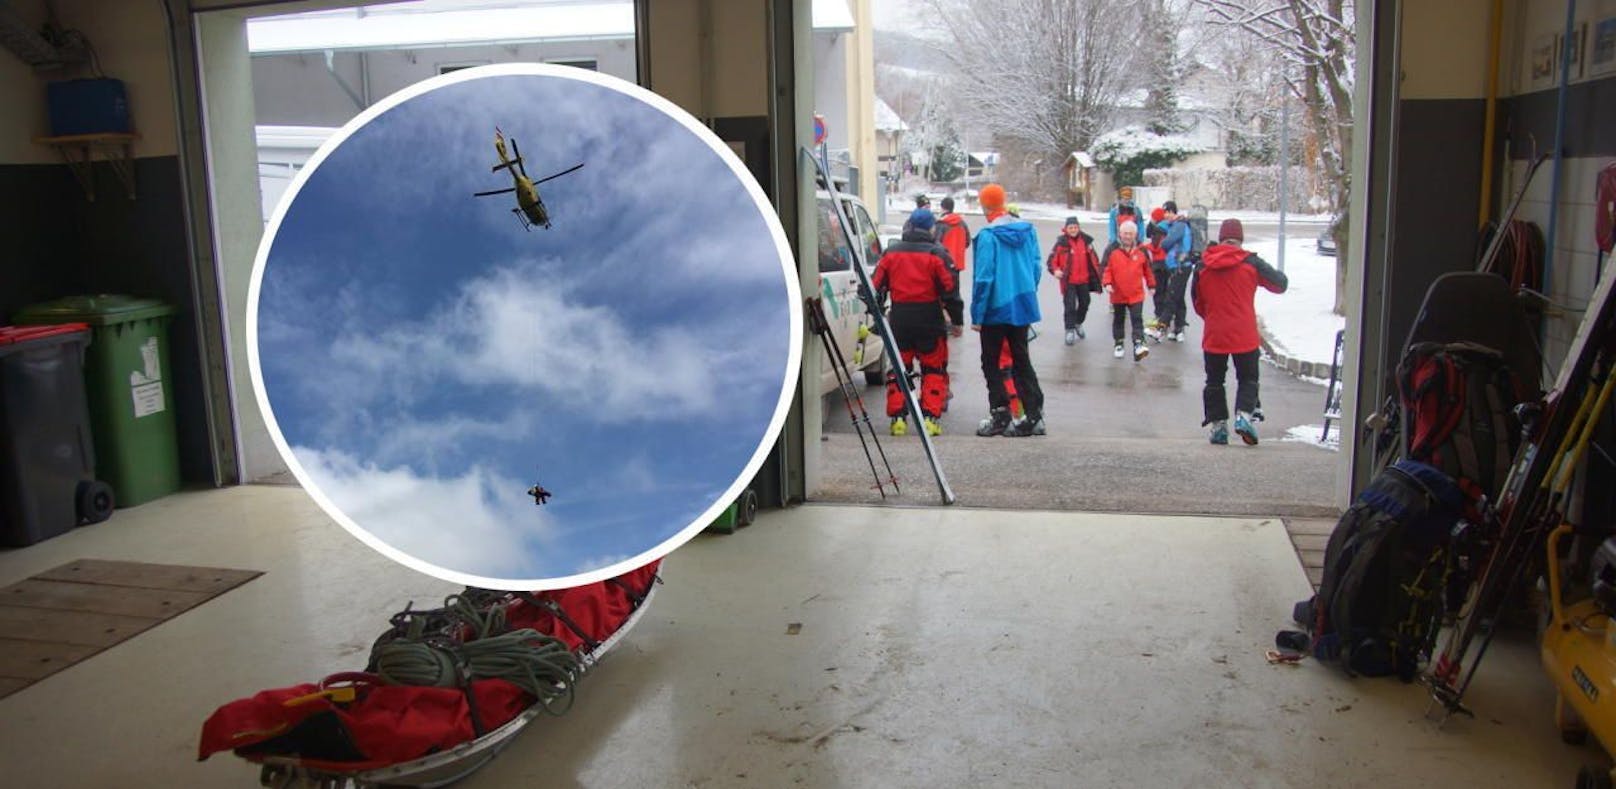 Wiener auf Rax abgestürzt: Seilbergung via Helikopter